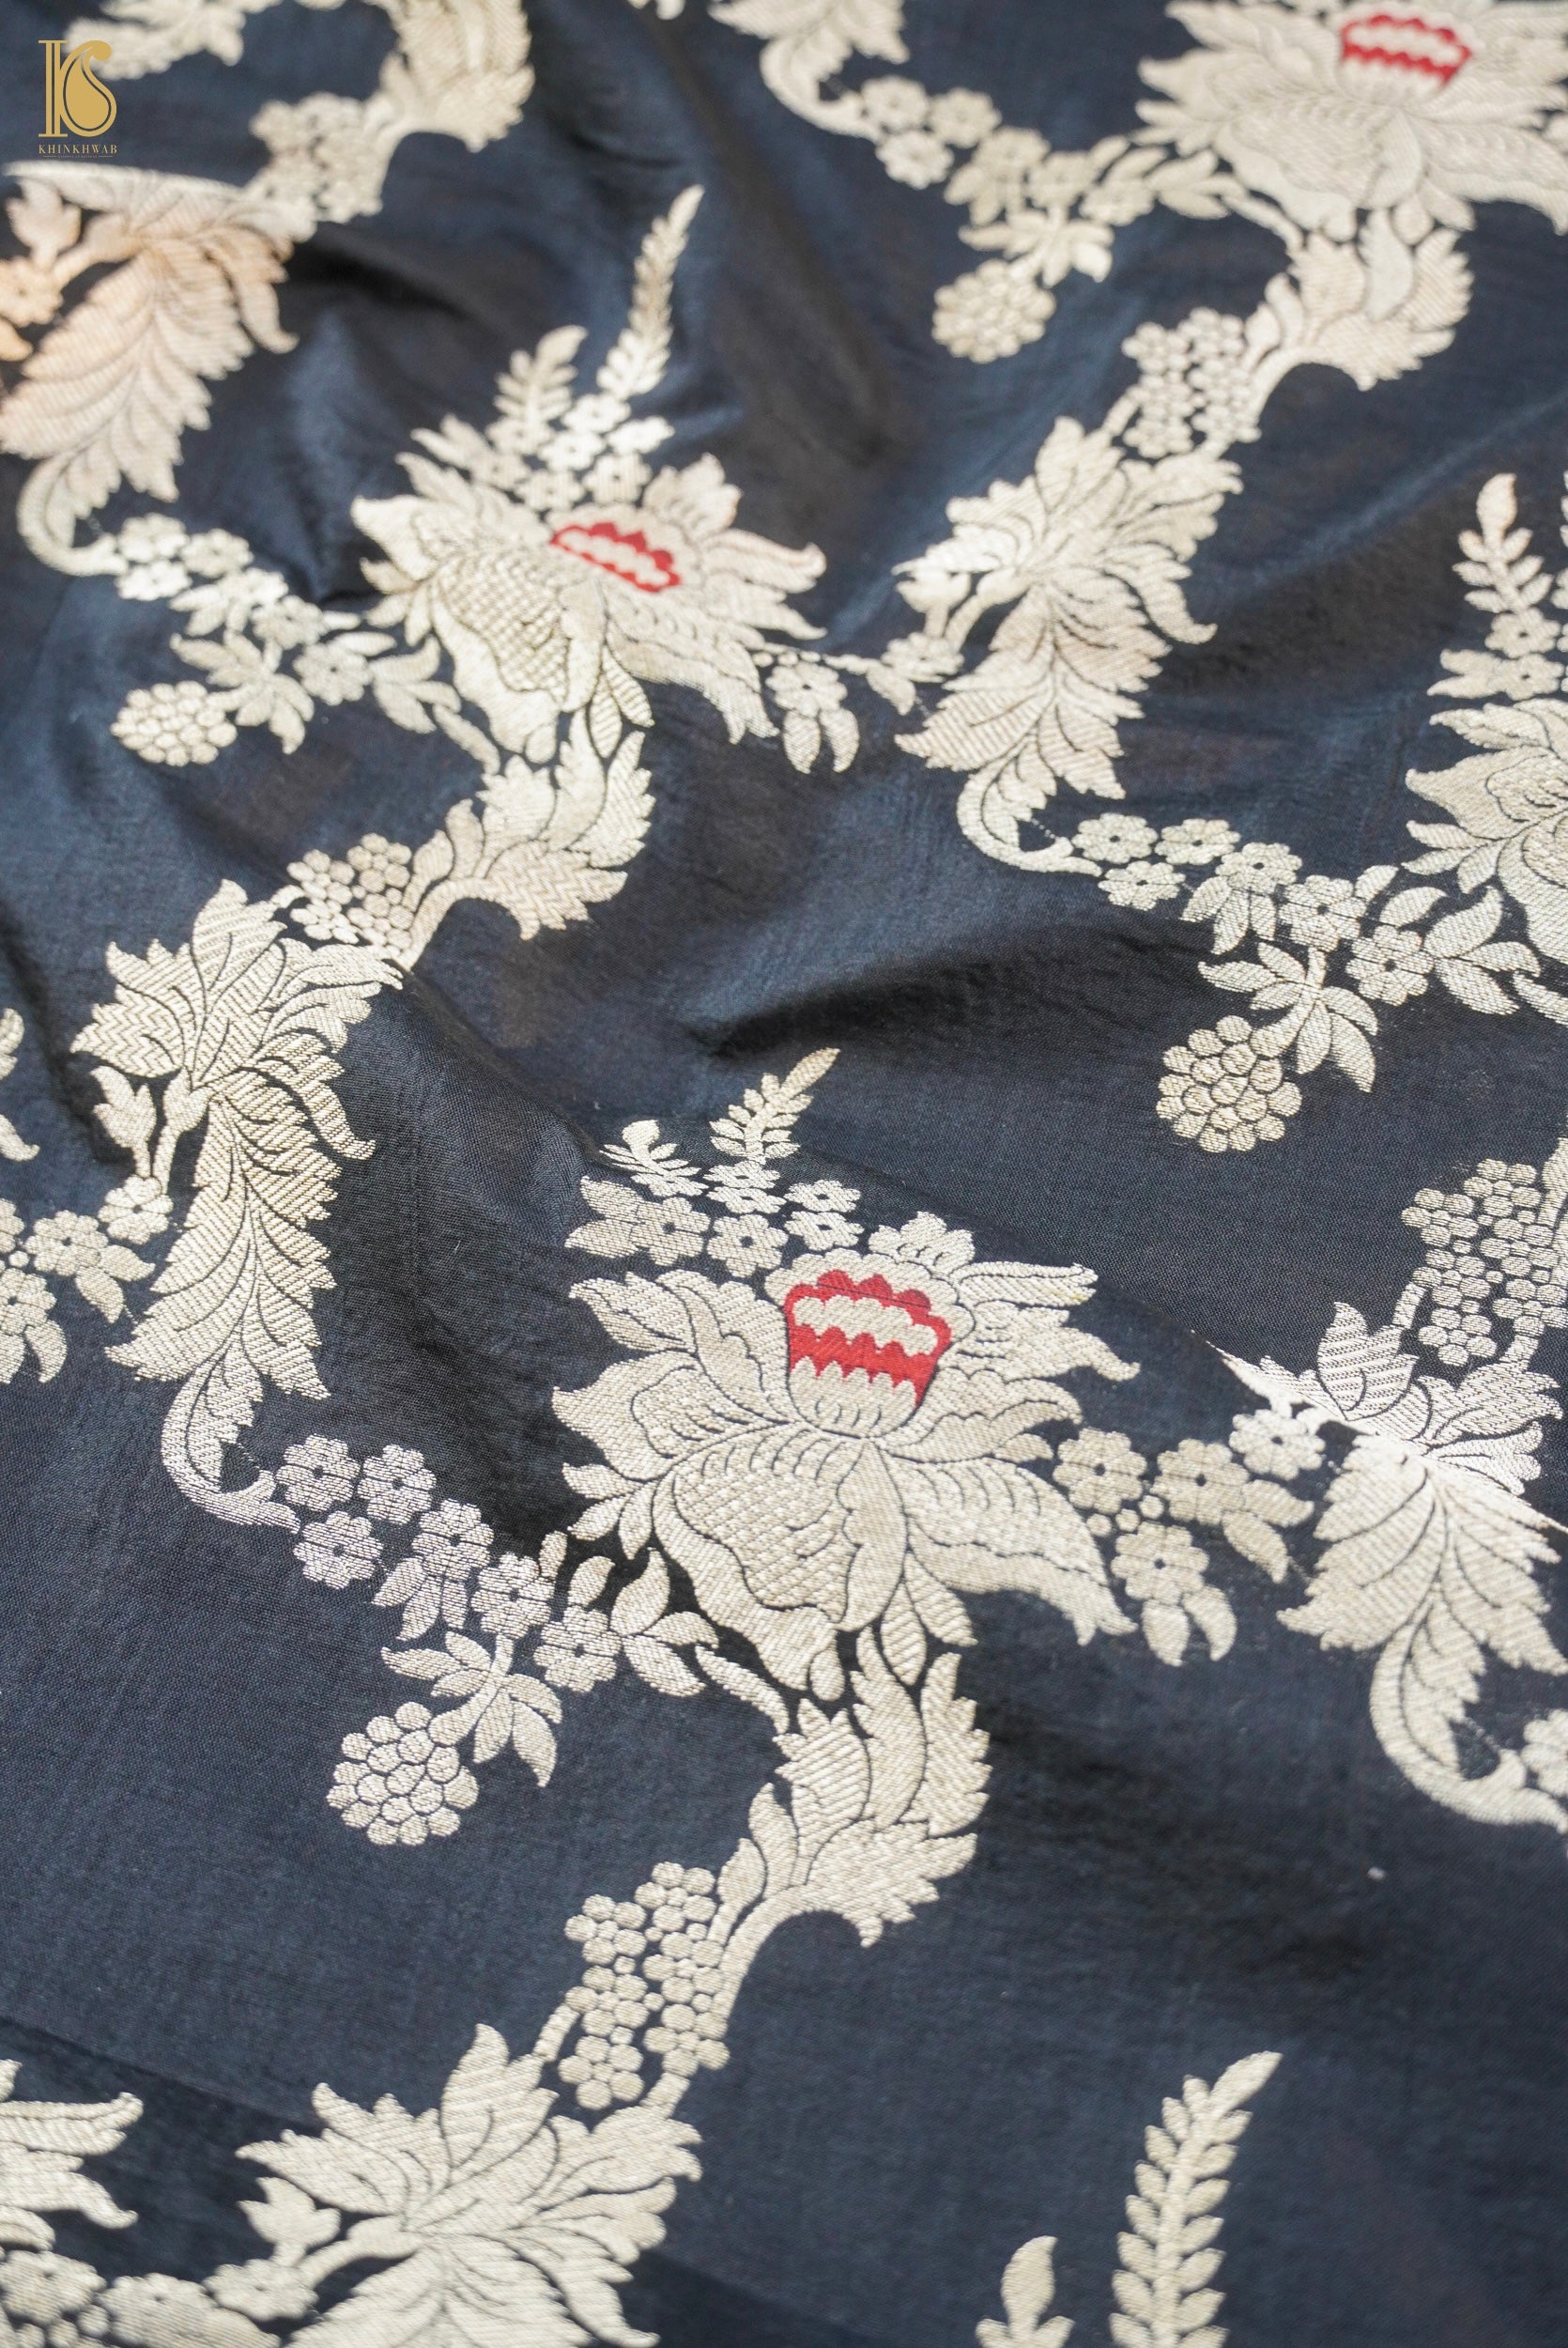 Brocade Banarasi Handloom Silk Fabric